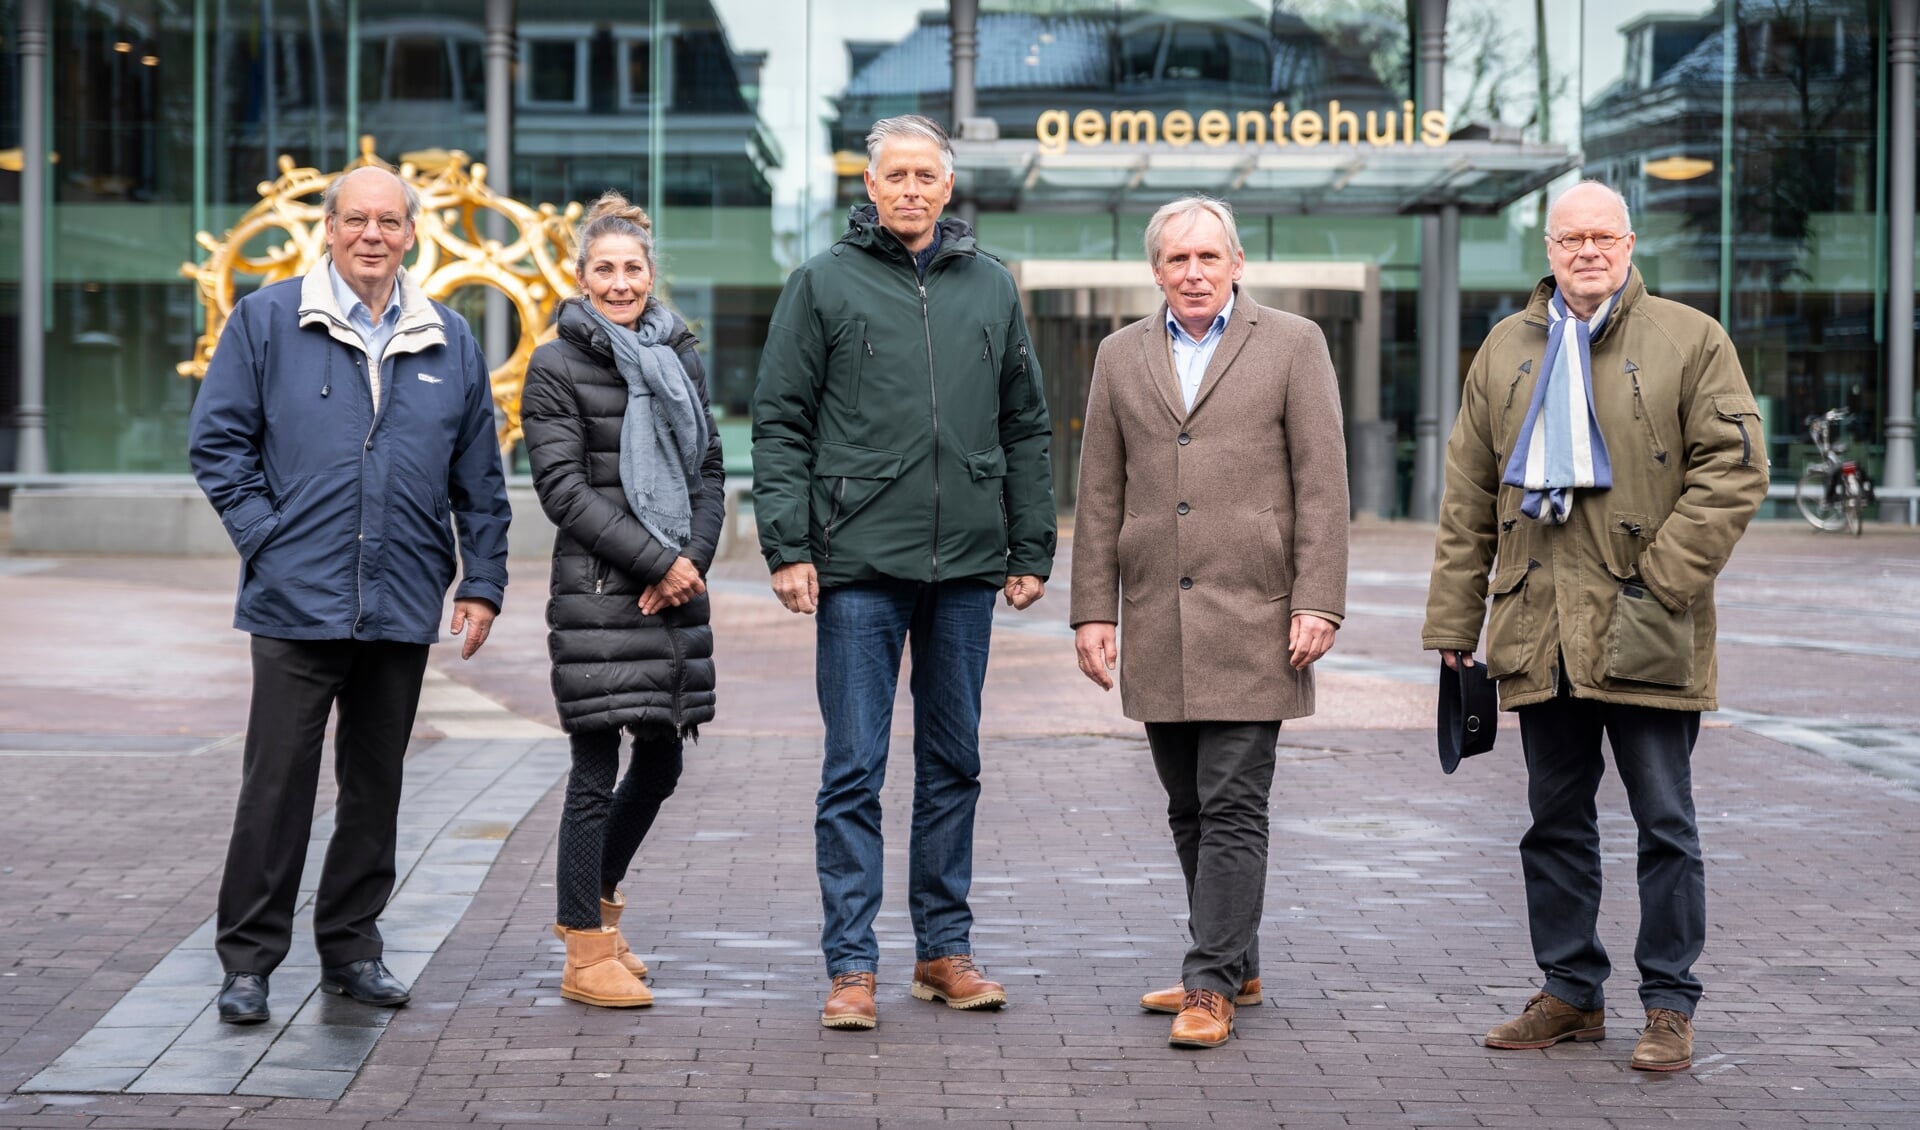 De leden van het Vier5Mei Comité. Van links naar rechts: Aaldert van der Horst, Monique Blommert,  Willem Massier, Hans Versteegh en Sikko Kranenborg.